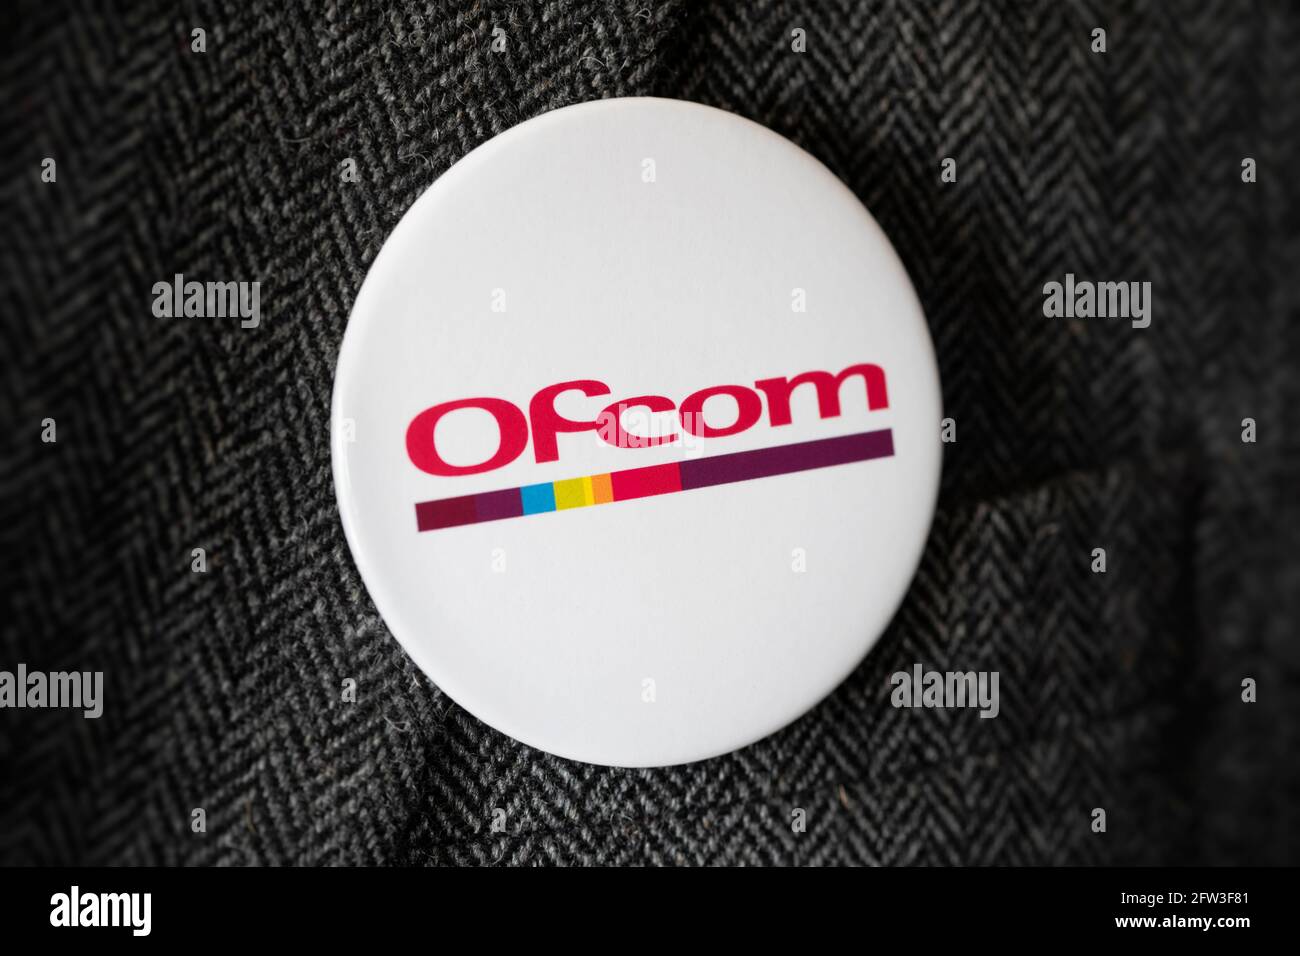 Ein Knopfabzeichen mit dem Logo des Ofcom Kommunikationsreglers, das an einer Jacke befestigt ist. Stockfoto